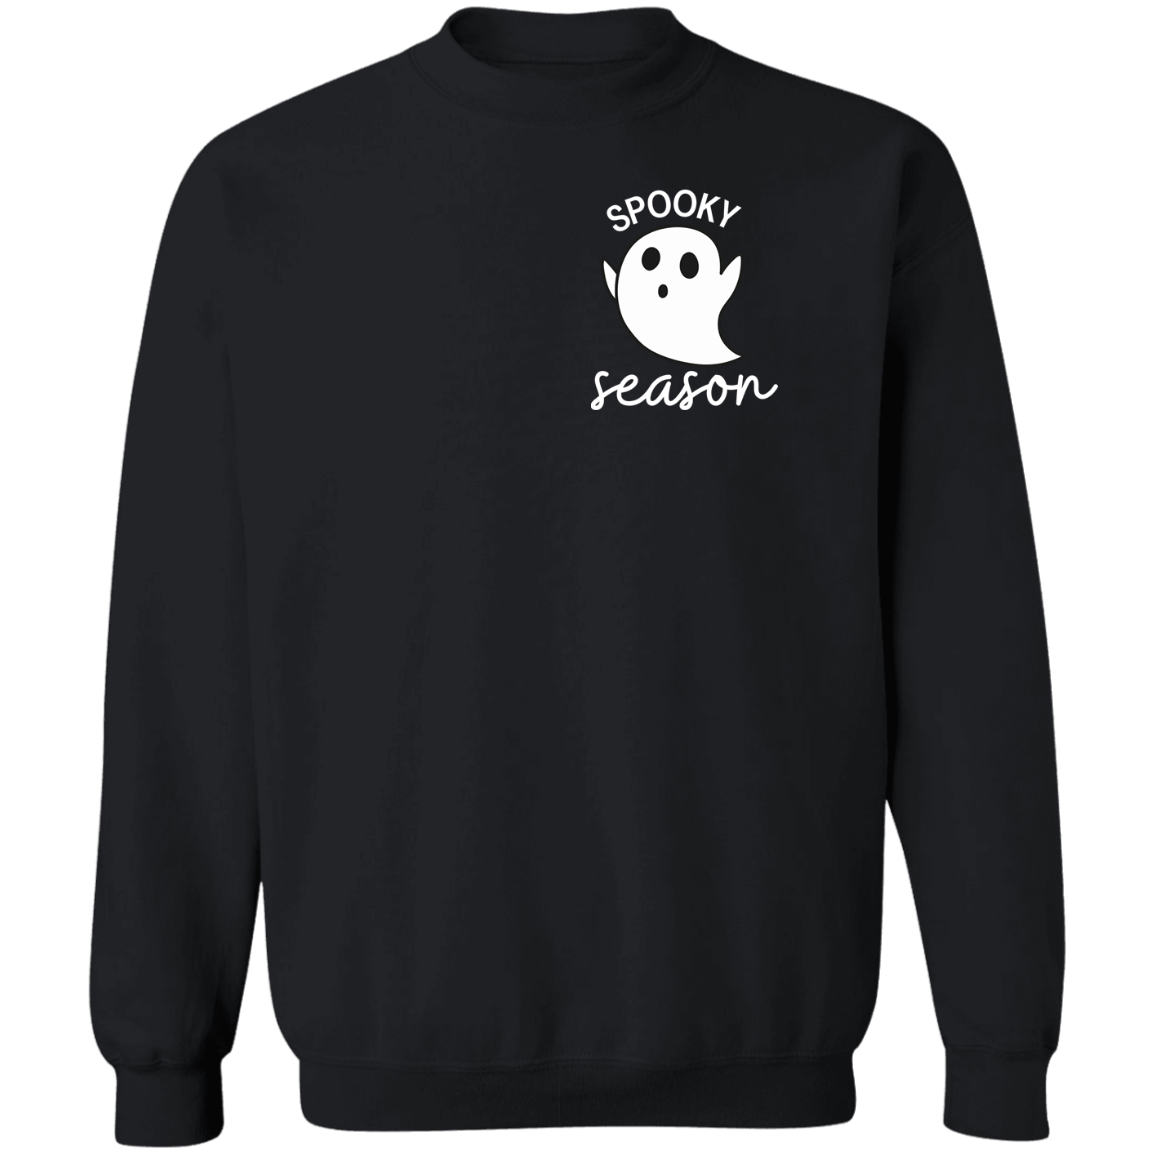 Spooky Season Crewneck Unisex Pullover Sweatshirt